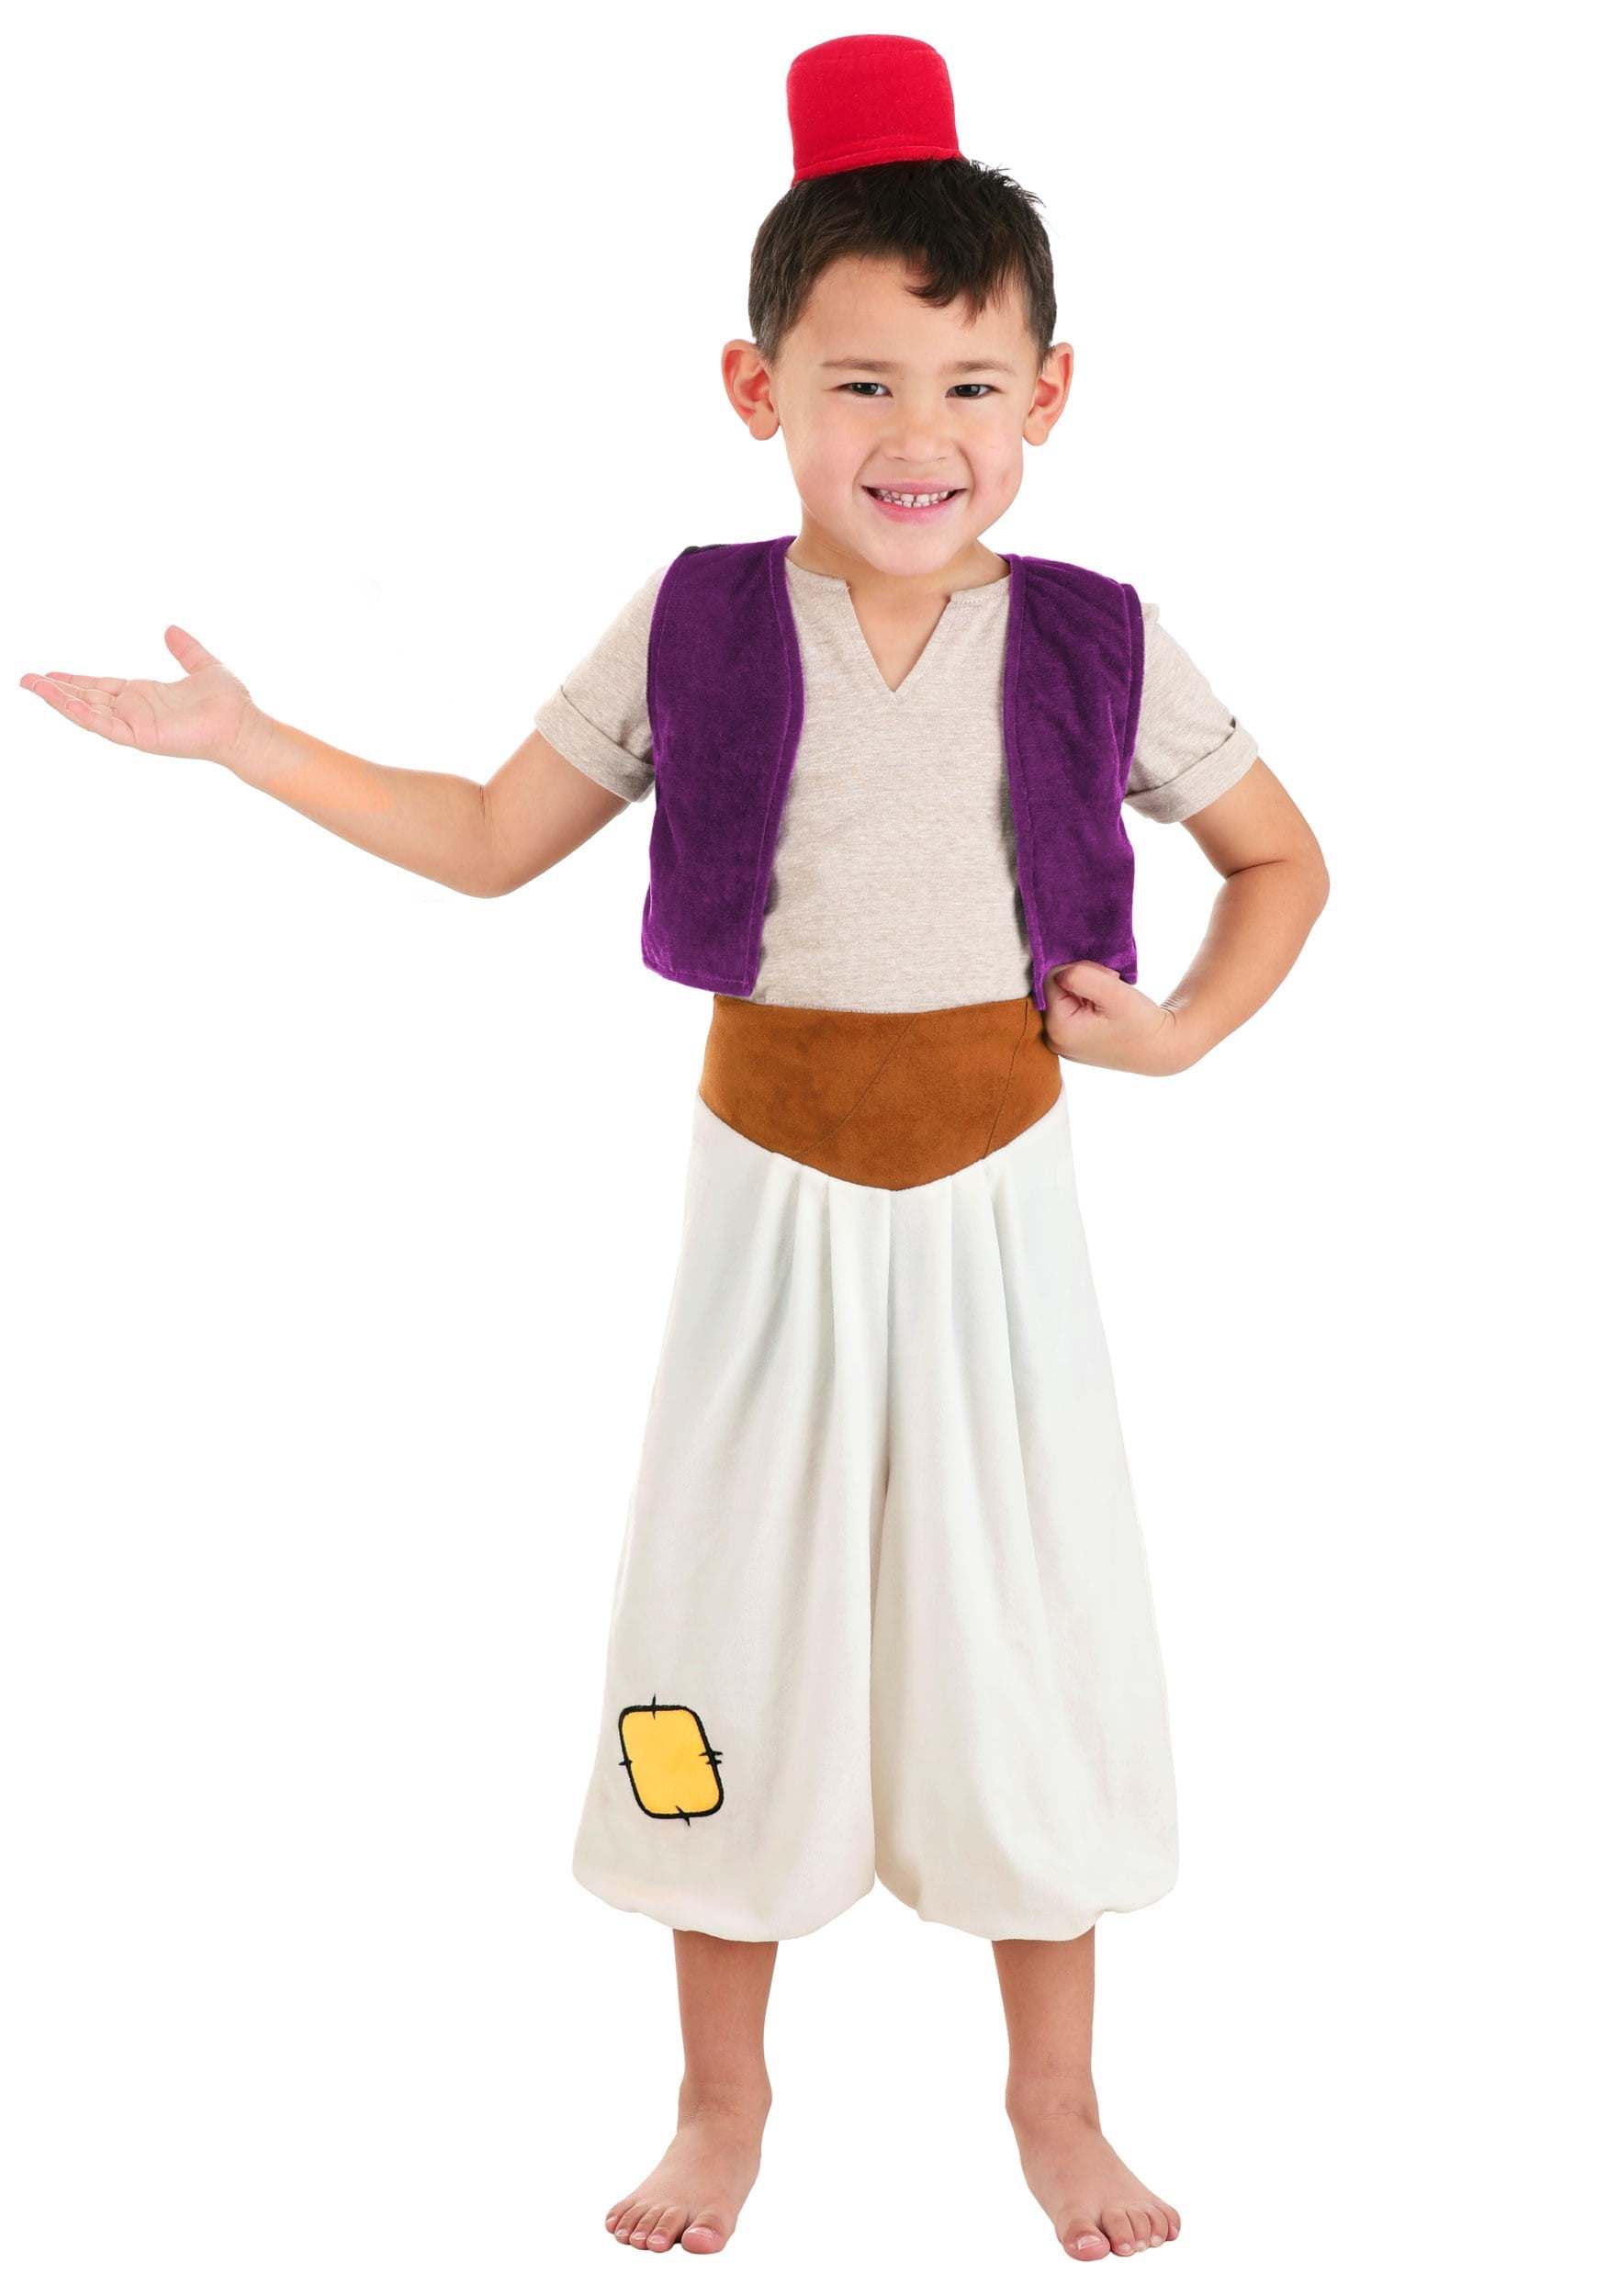 Aladdin Costume for Kids